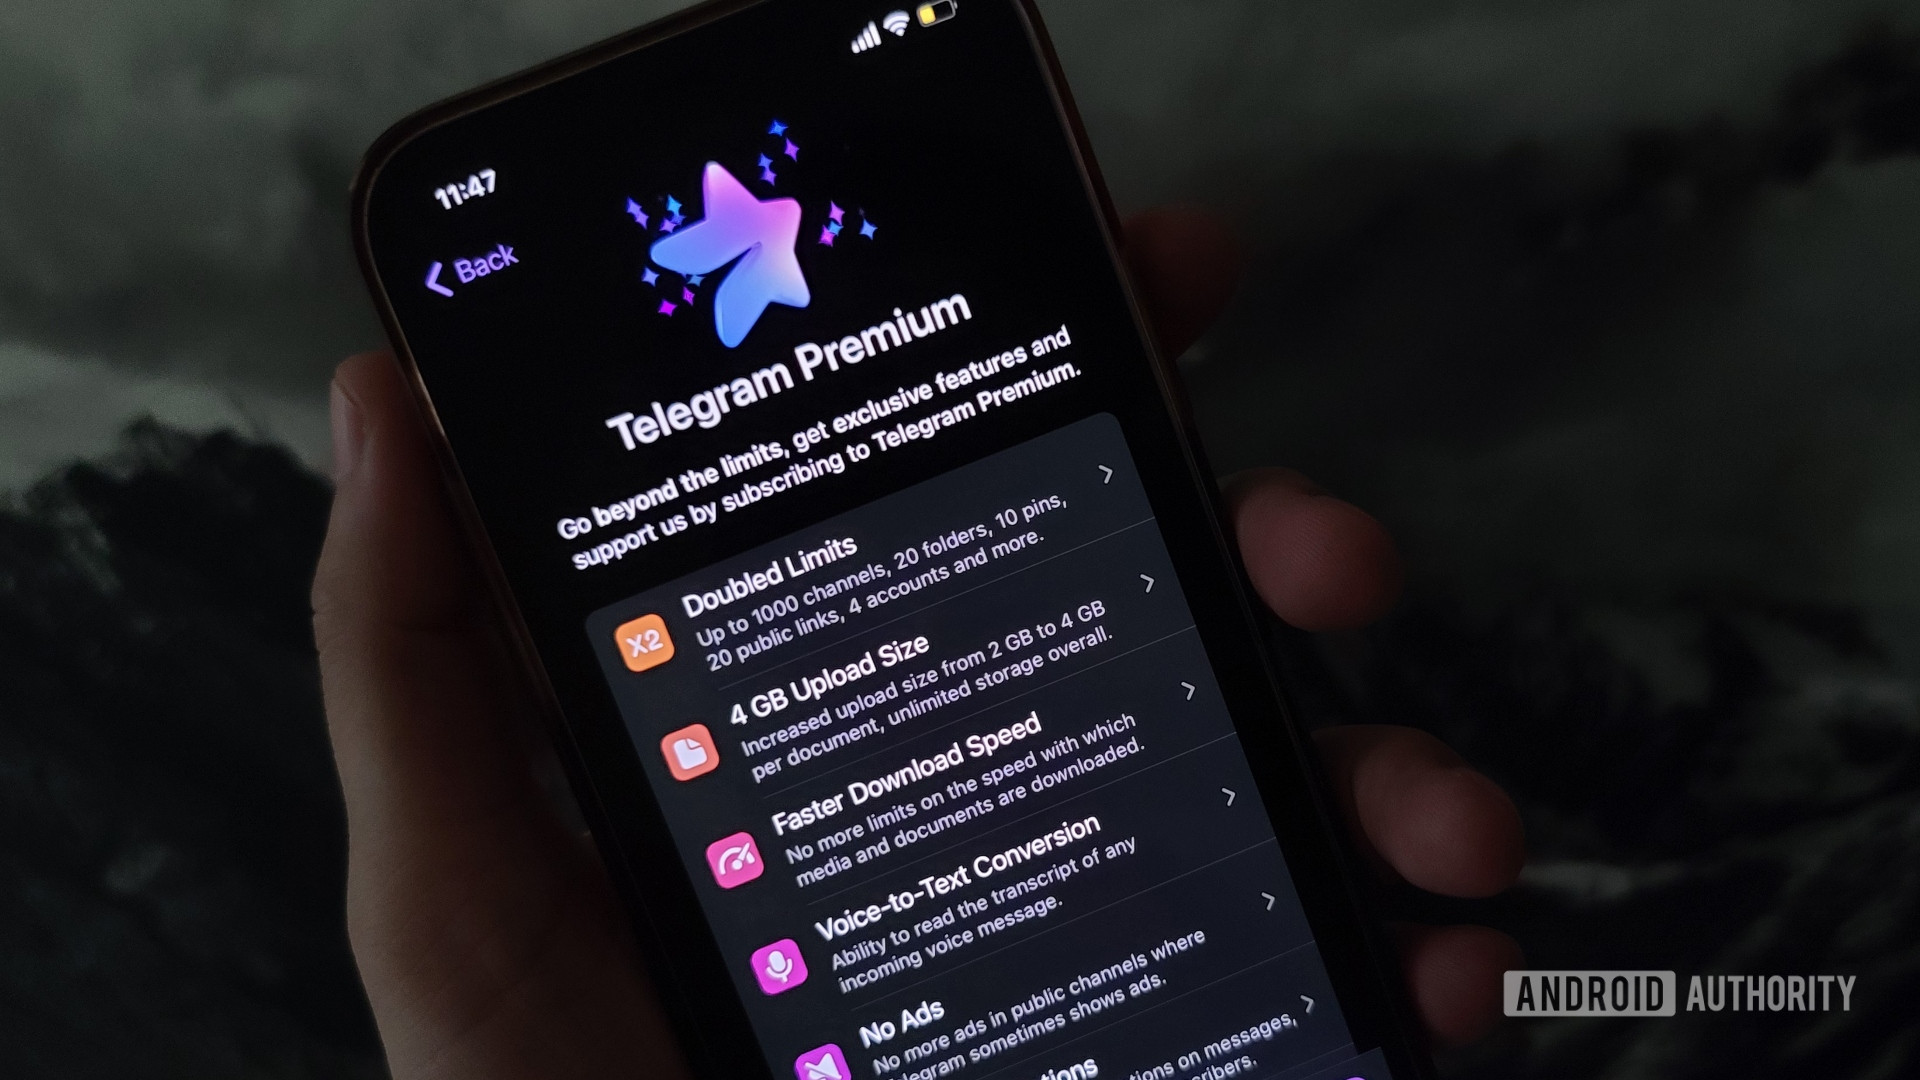 Telegram Premium on iPhone